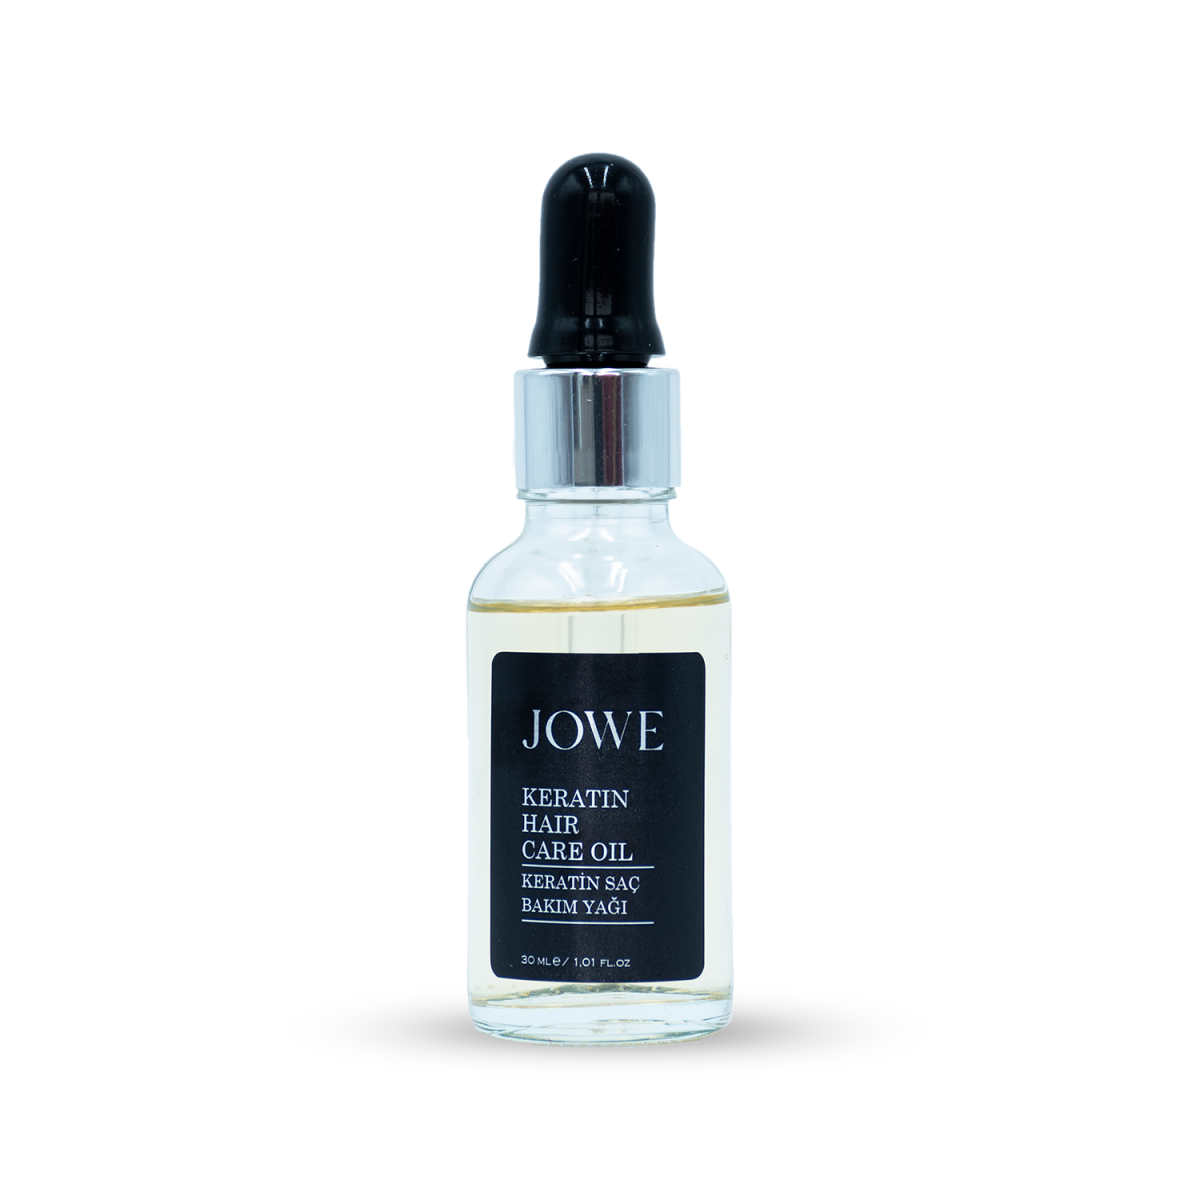 JOWE - Keratin Hair Care Oil